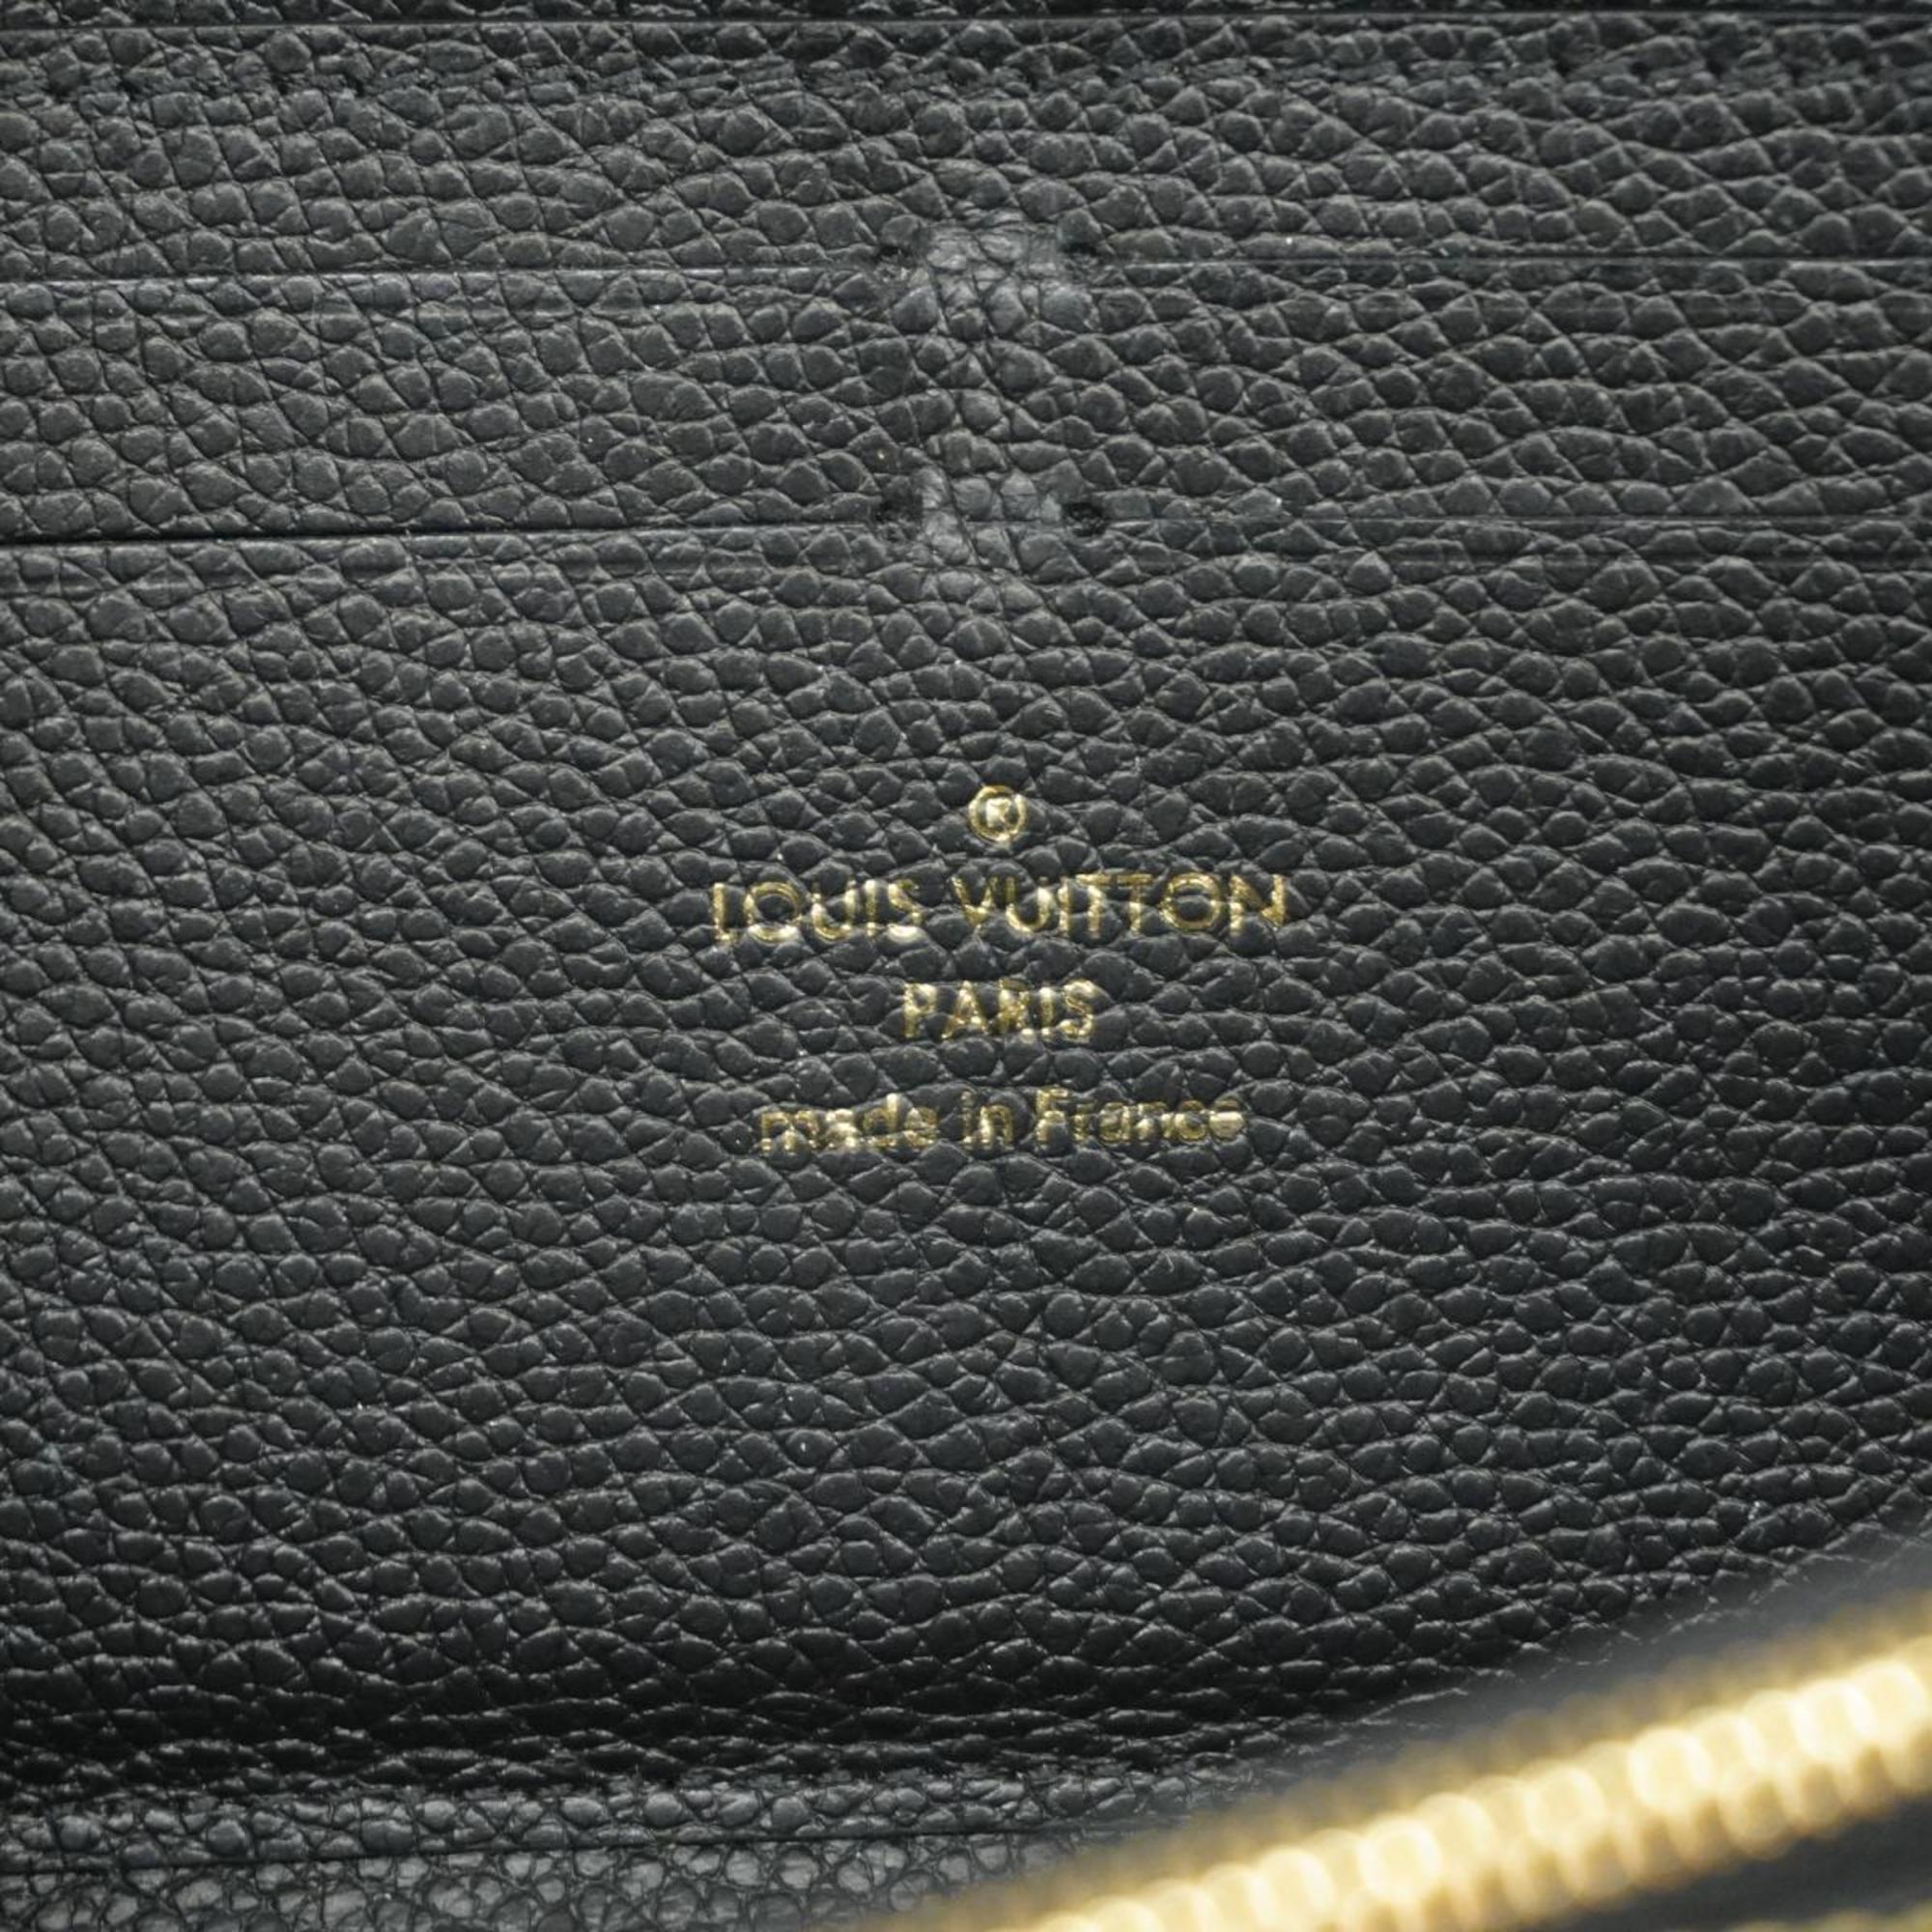 Louis Vuitton Long Wallet Monogram Empreinte Portefeuille Clemence M60171 Noir Ladies